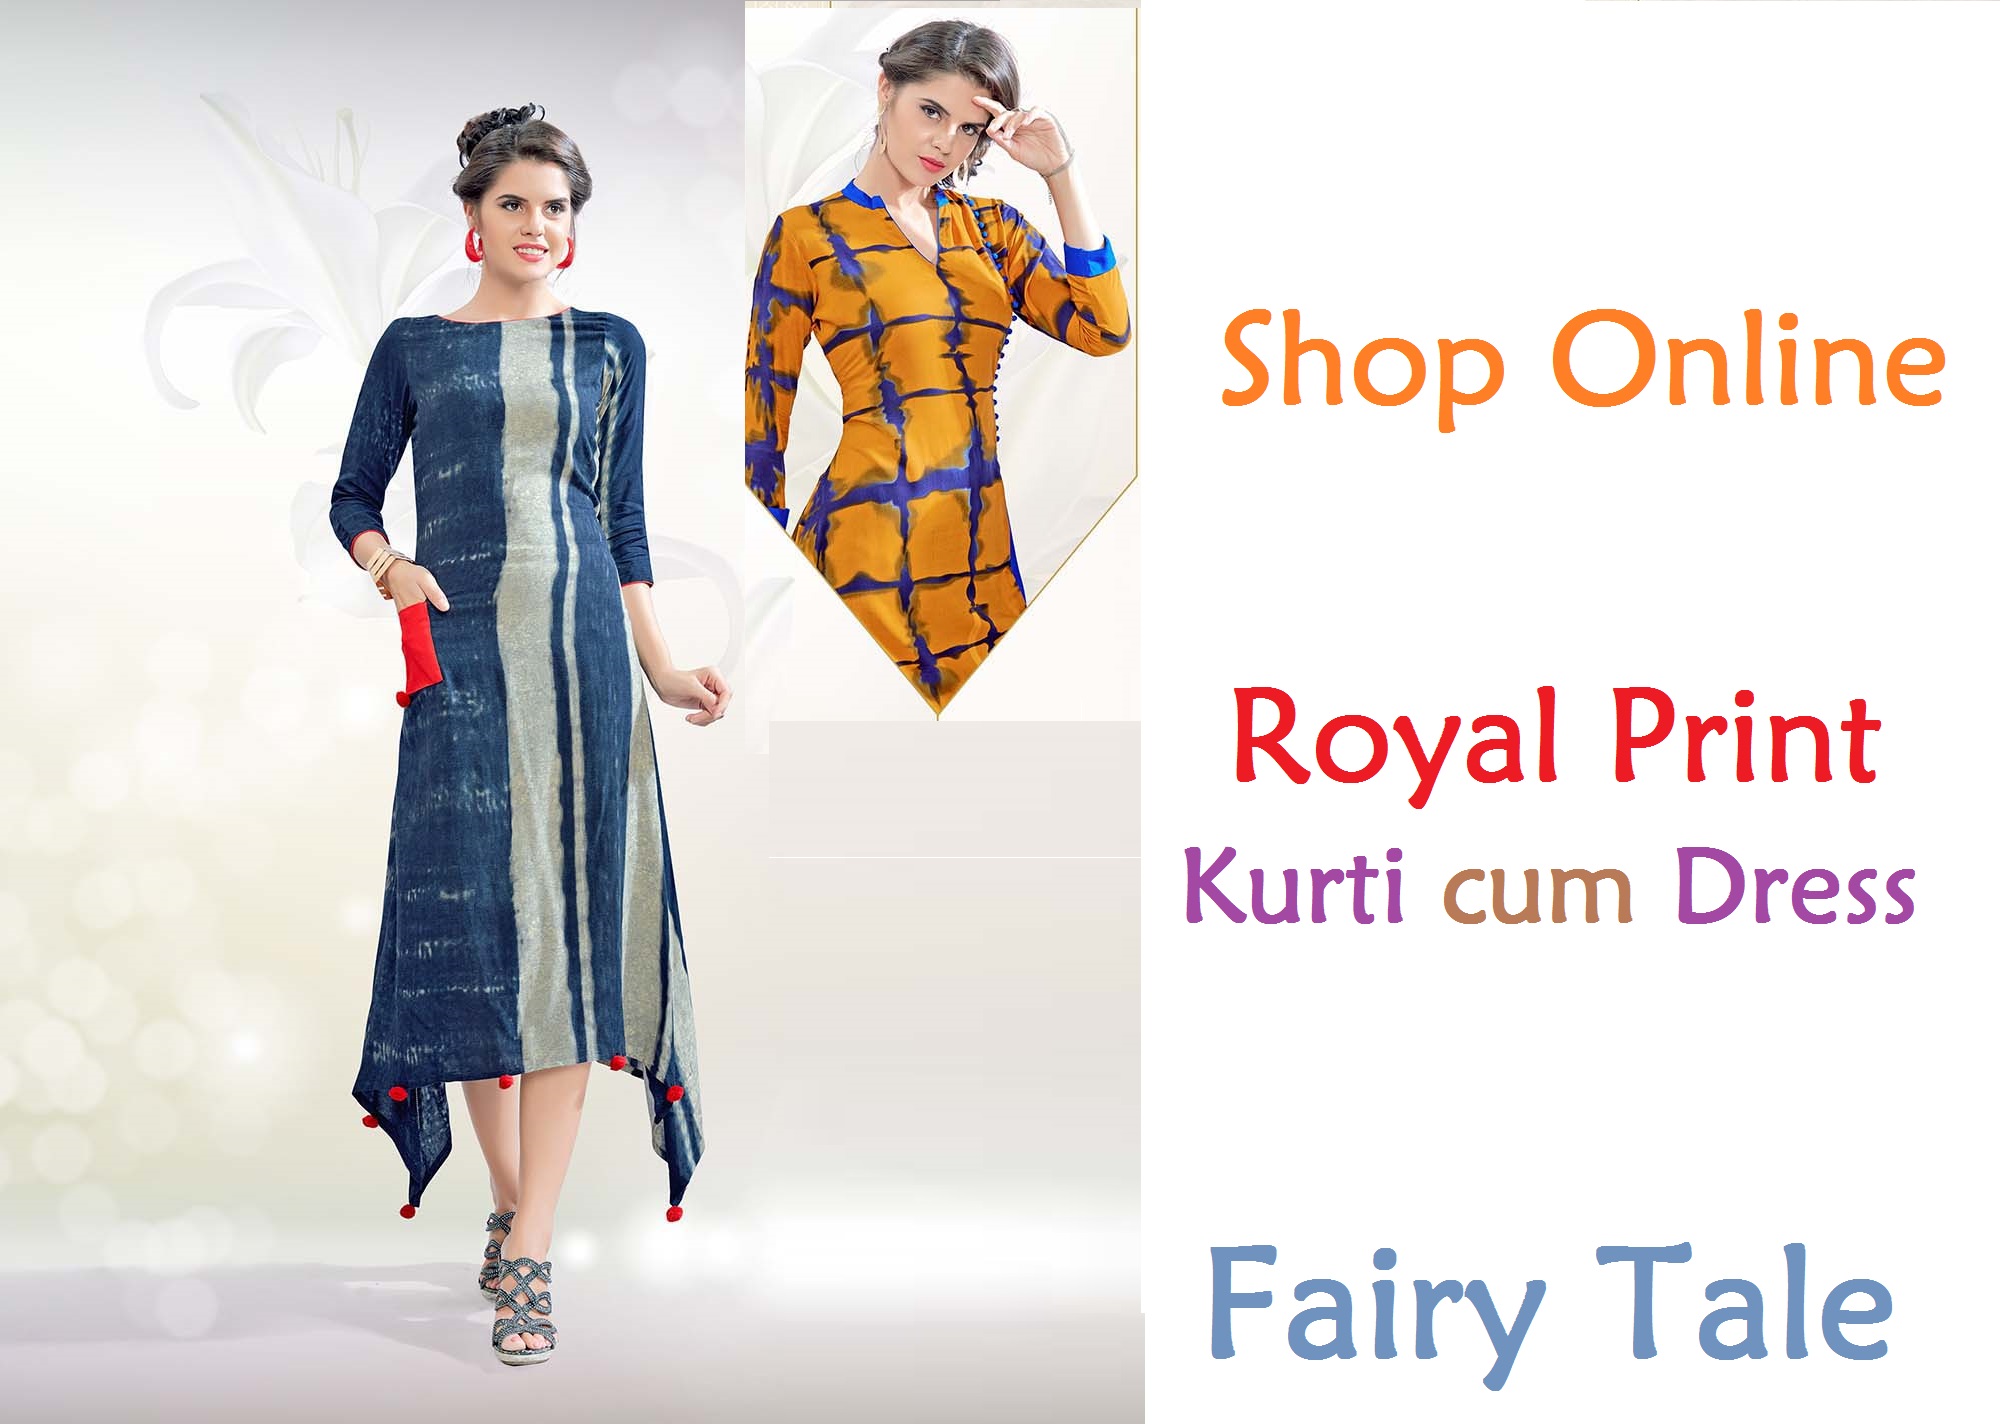 Fairy Tale Royal Print Kurti cum Dress